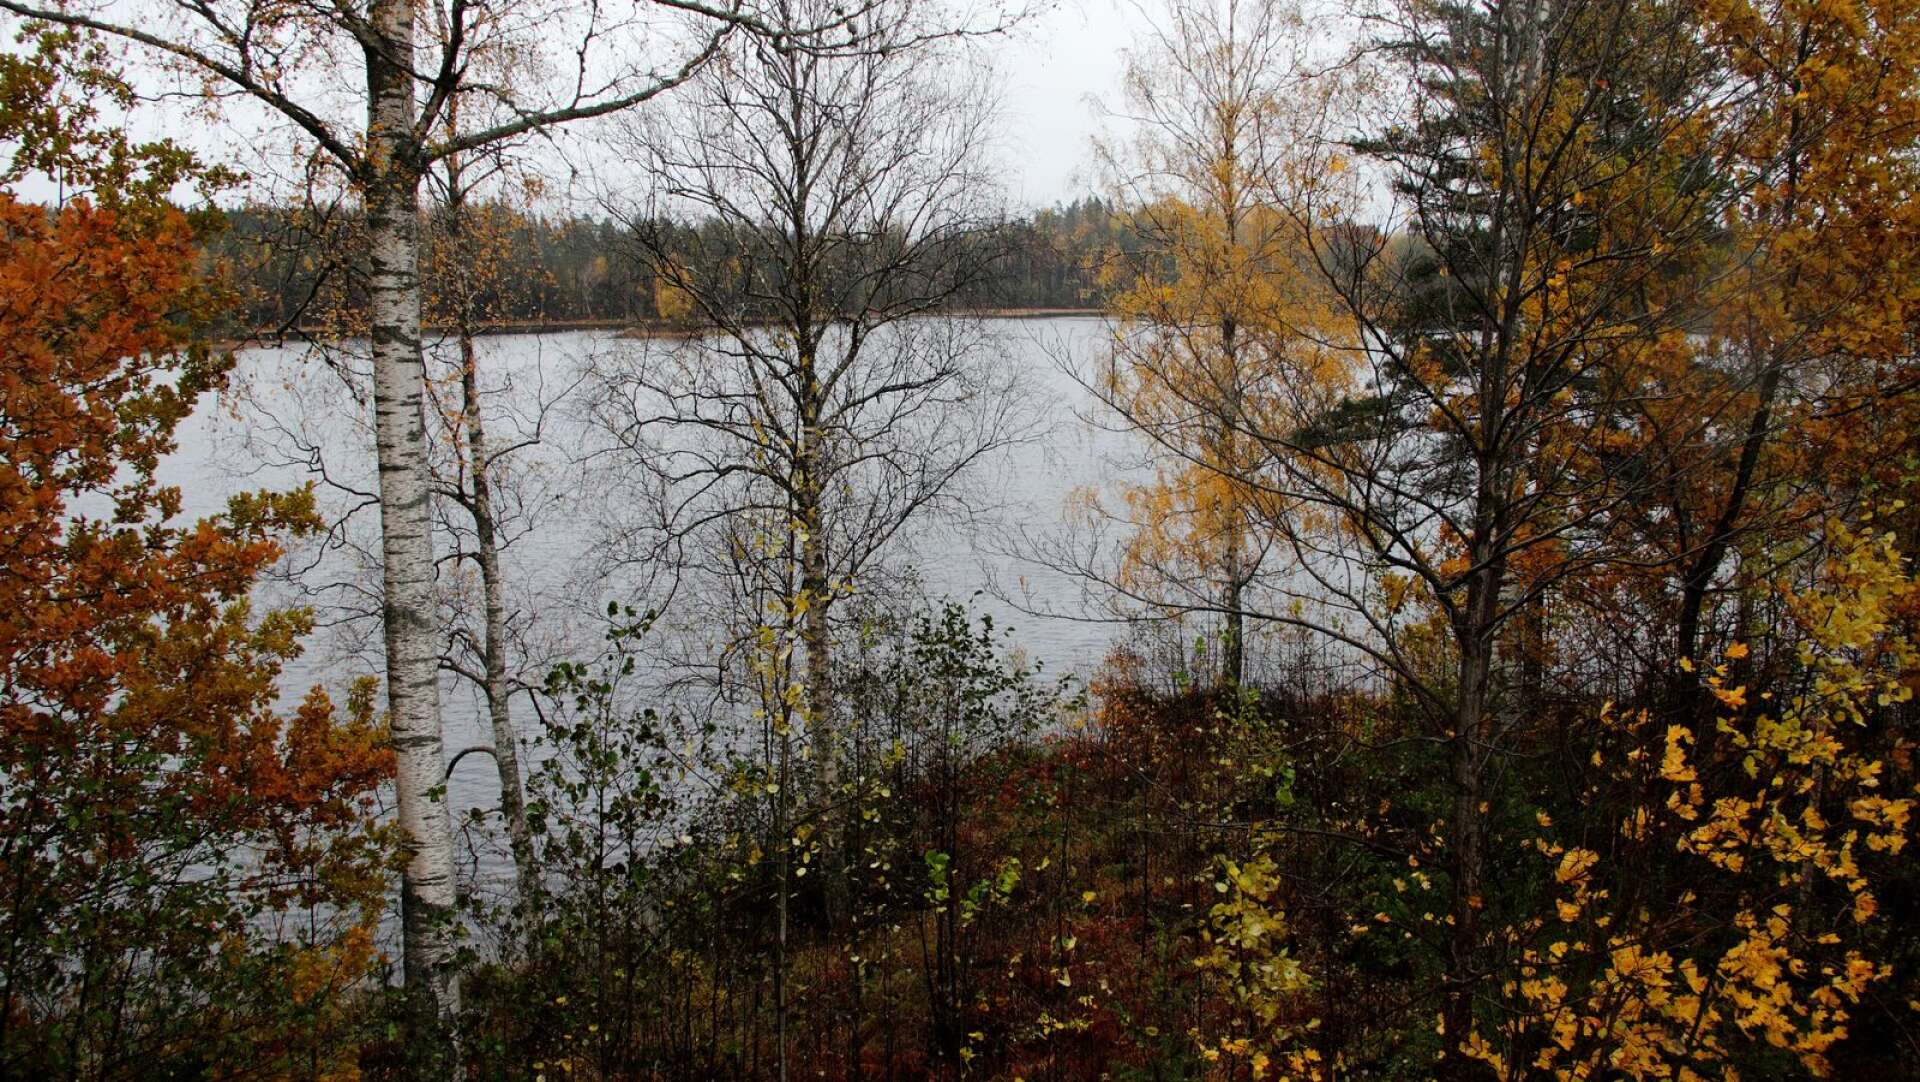 Svartå utvecklingsgrupp jobbar bland annat för att det öppnas upp mer i skogspartiet längs väg 205, mot sjön Lill-Björken, och nu får alla komma med synpunkter på vad som behöver göras.